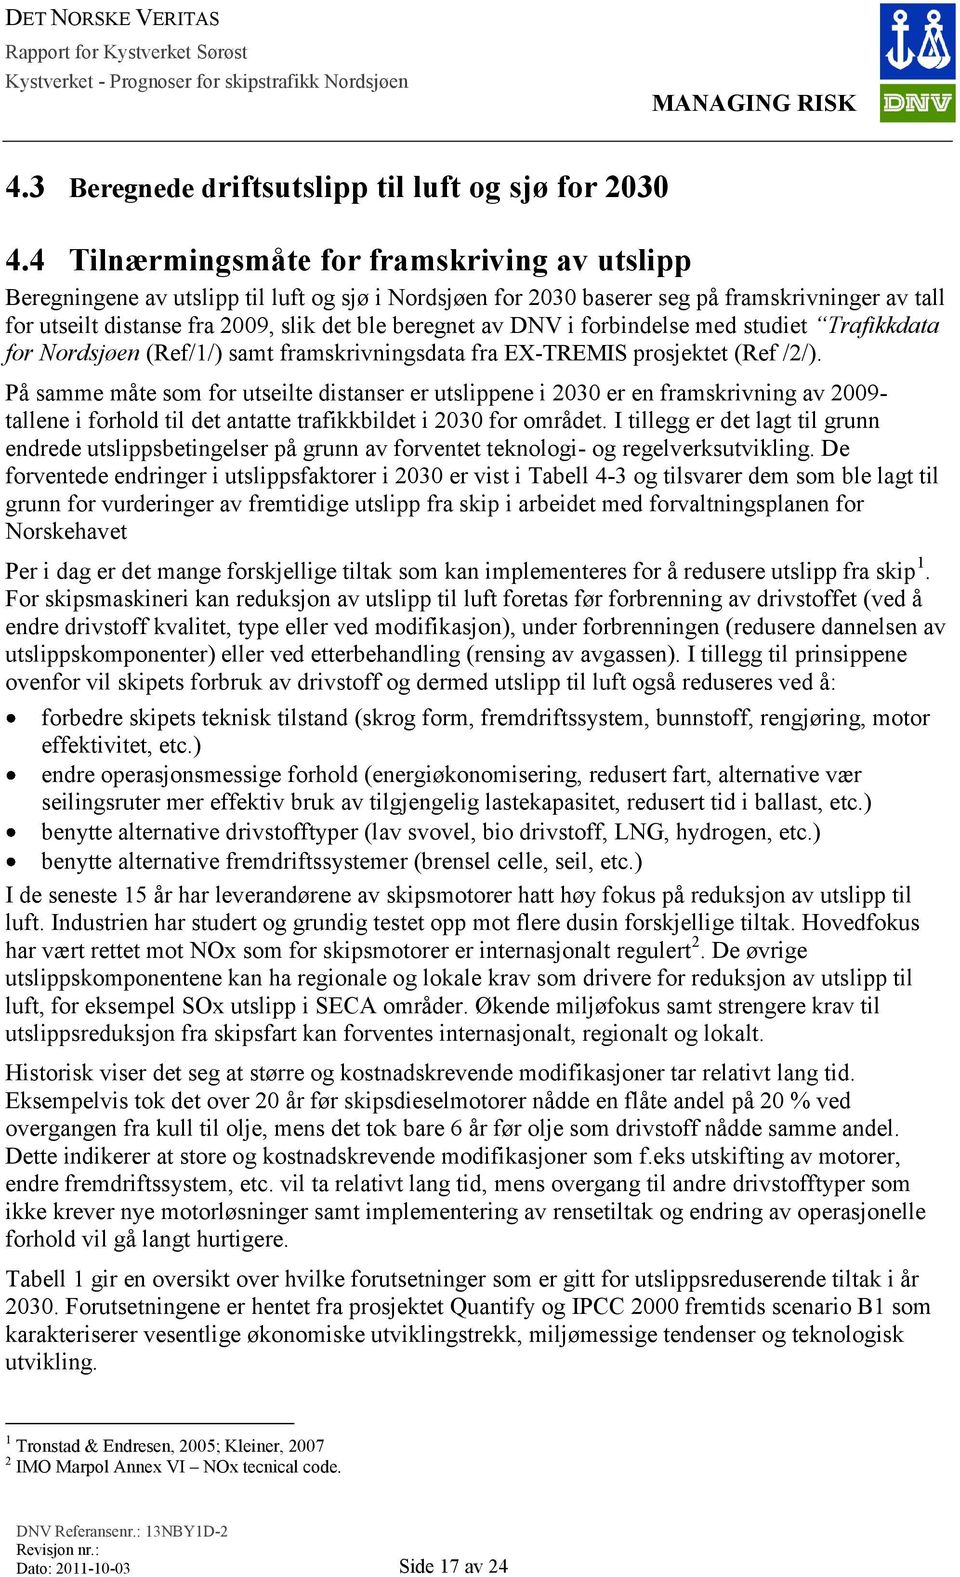 av DNV i forbindelse med studiet Trafikkdata for Nordsjøen (Ref/1/) samt framskrivningsdata fra EX-TREMIS prosjektet (Ref /2/).